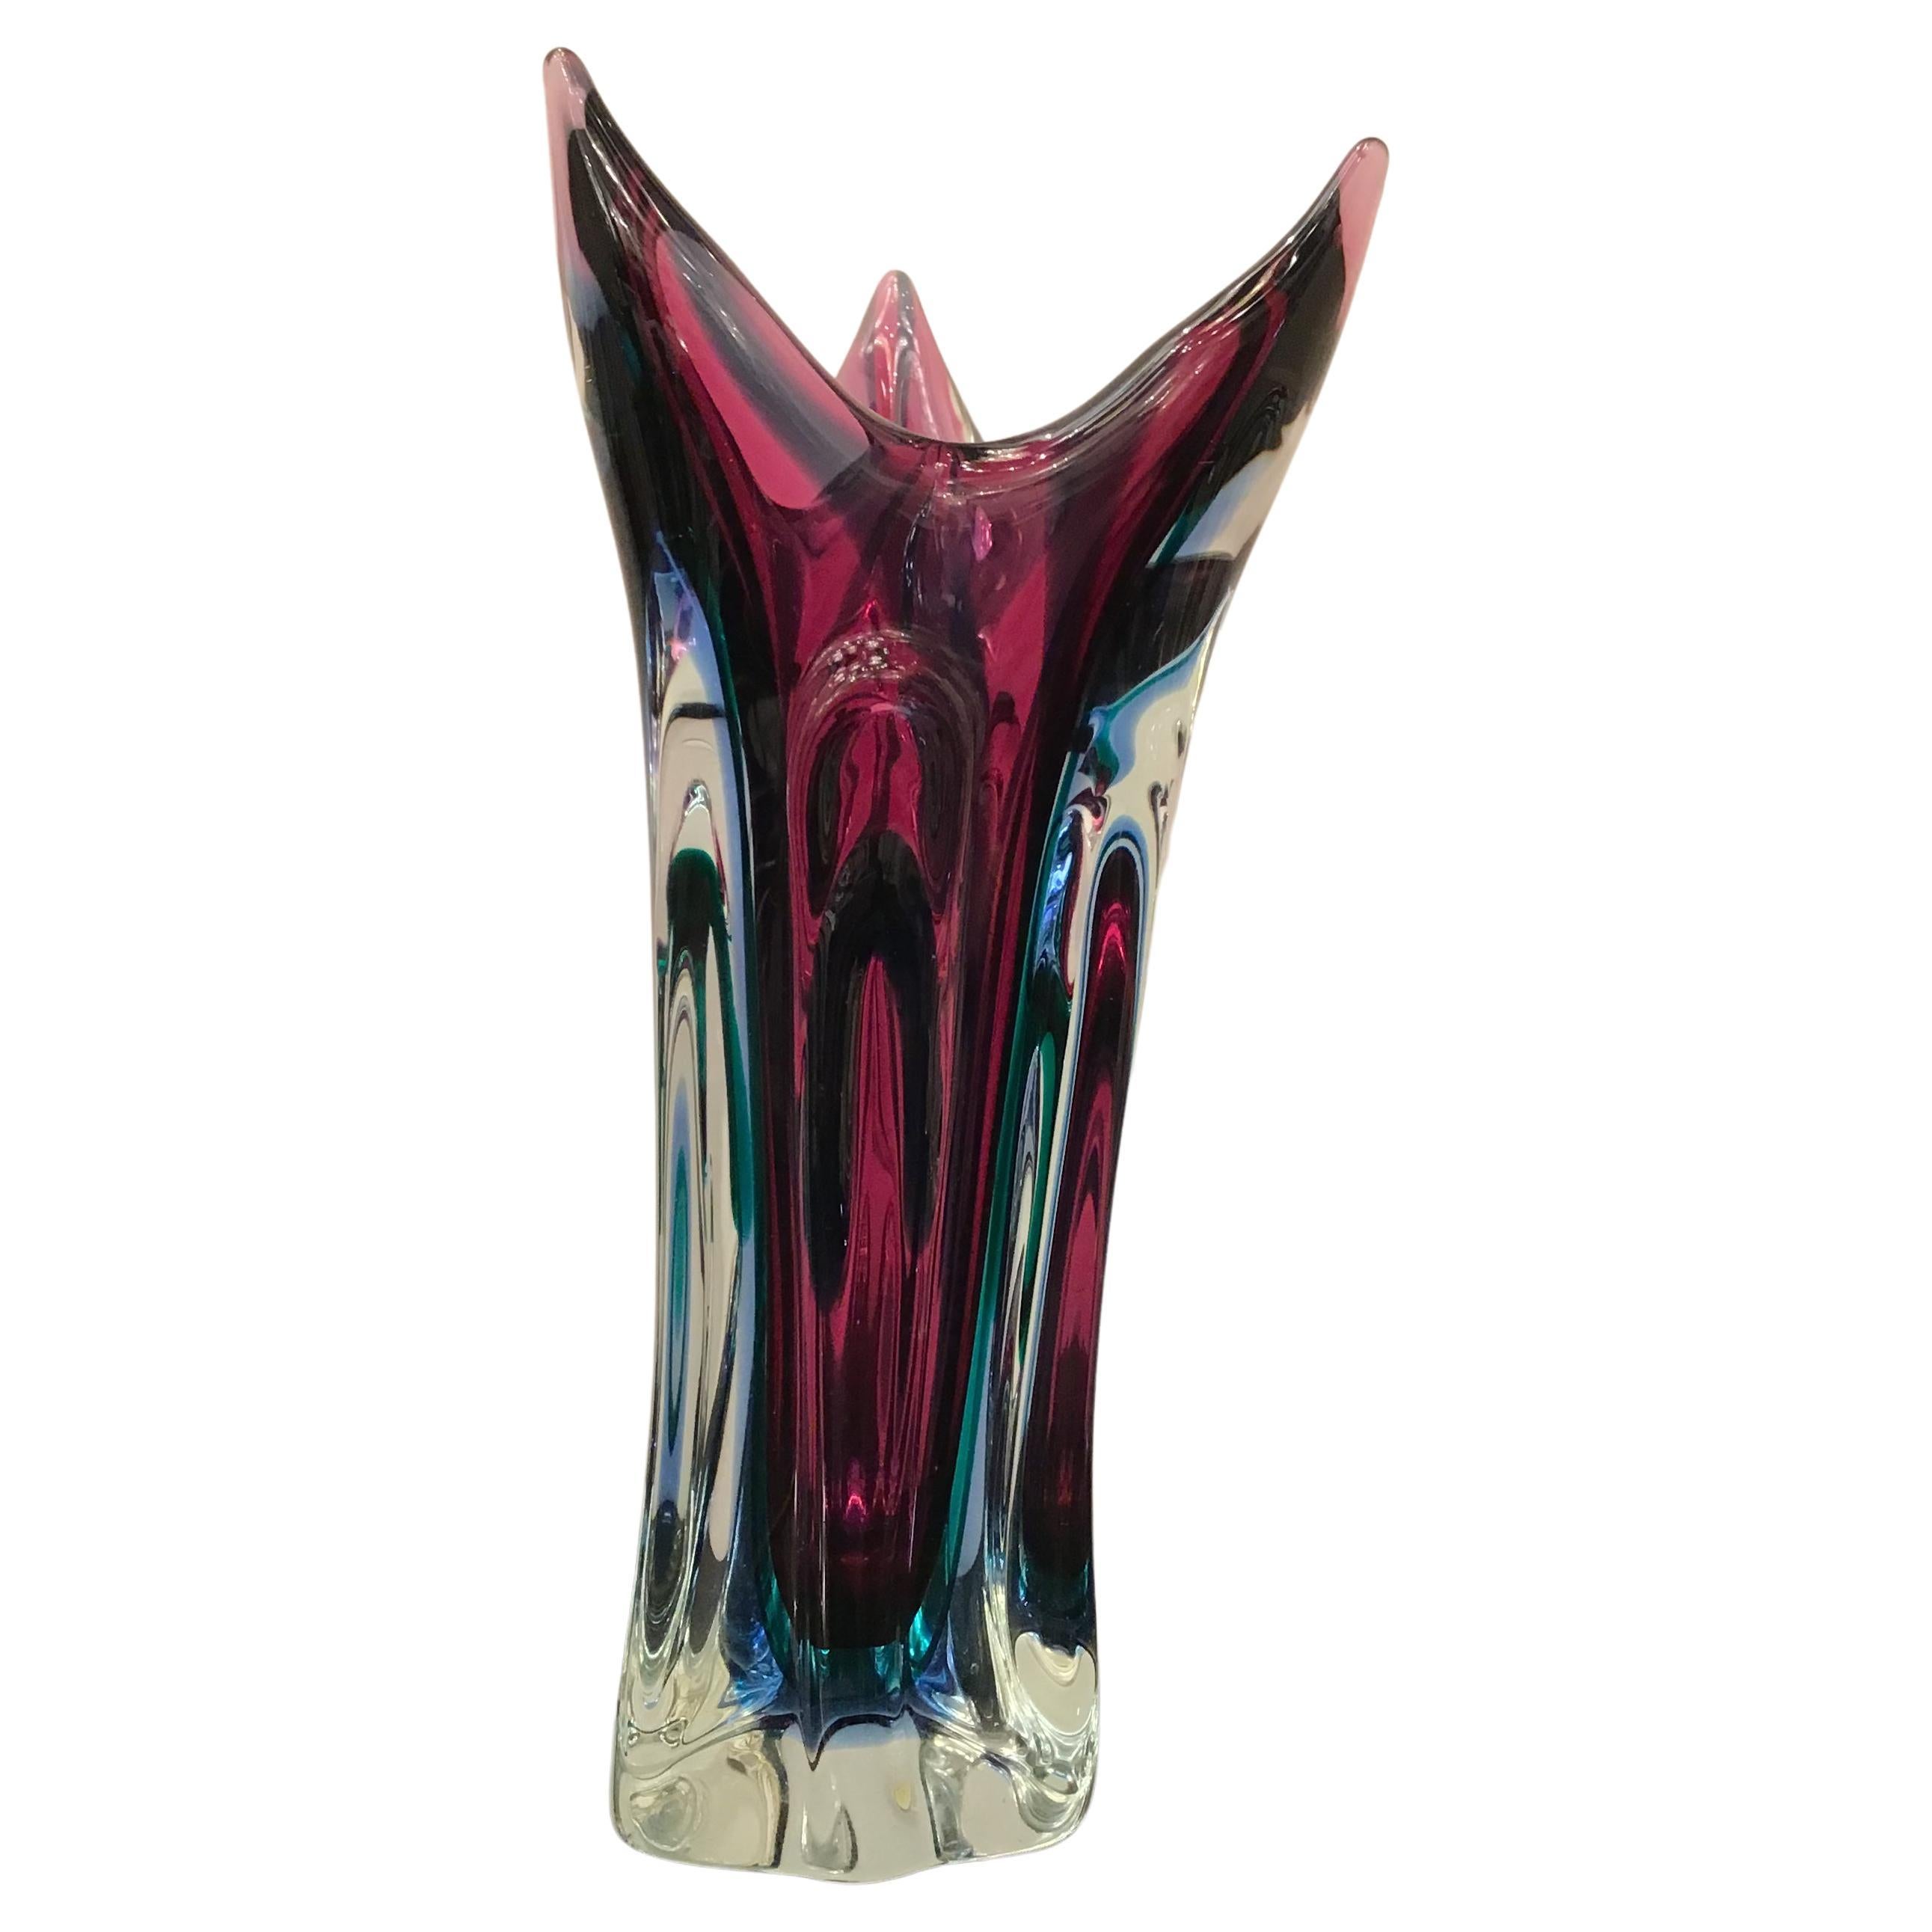 Seguso „“Flavio Poli“-Vase aus Muranoglas, 1950, Italien